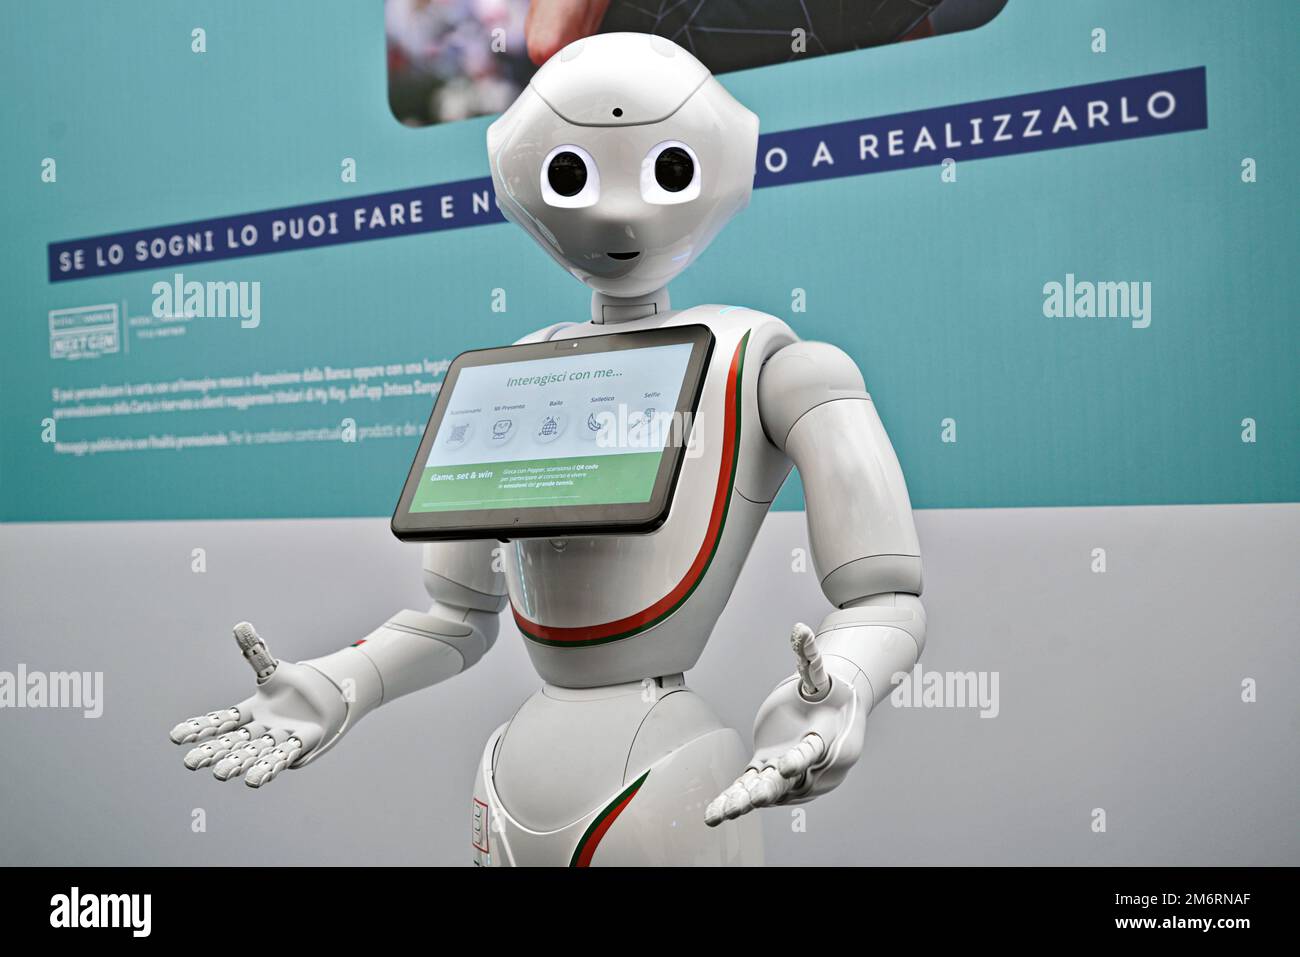 vælge aldrig brugerdefinerede Robot head hi-res stock photography and images - Alamy